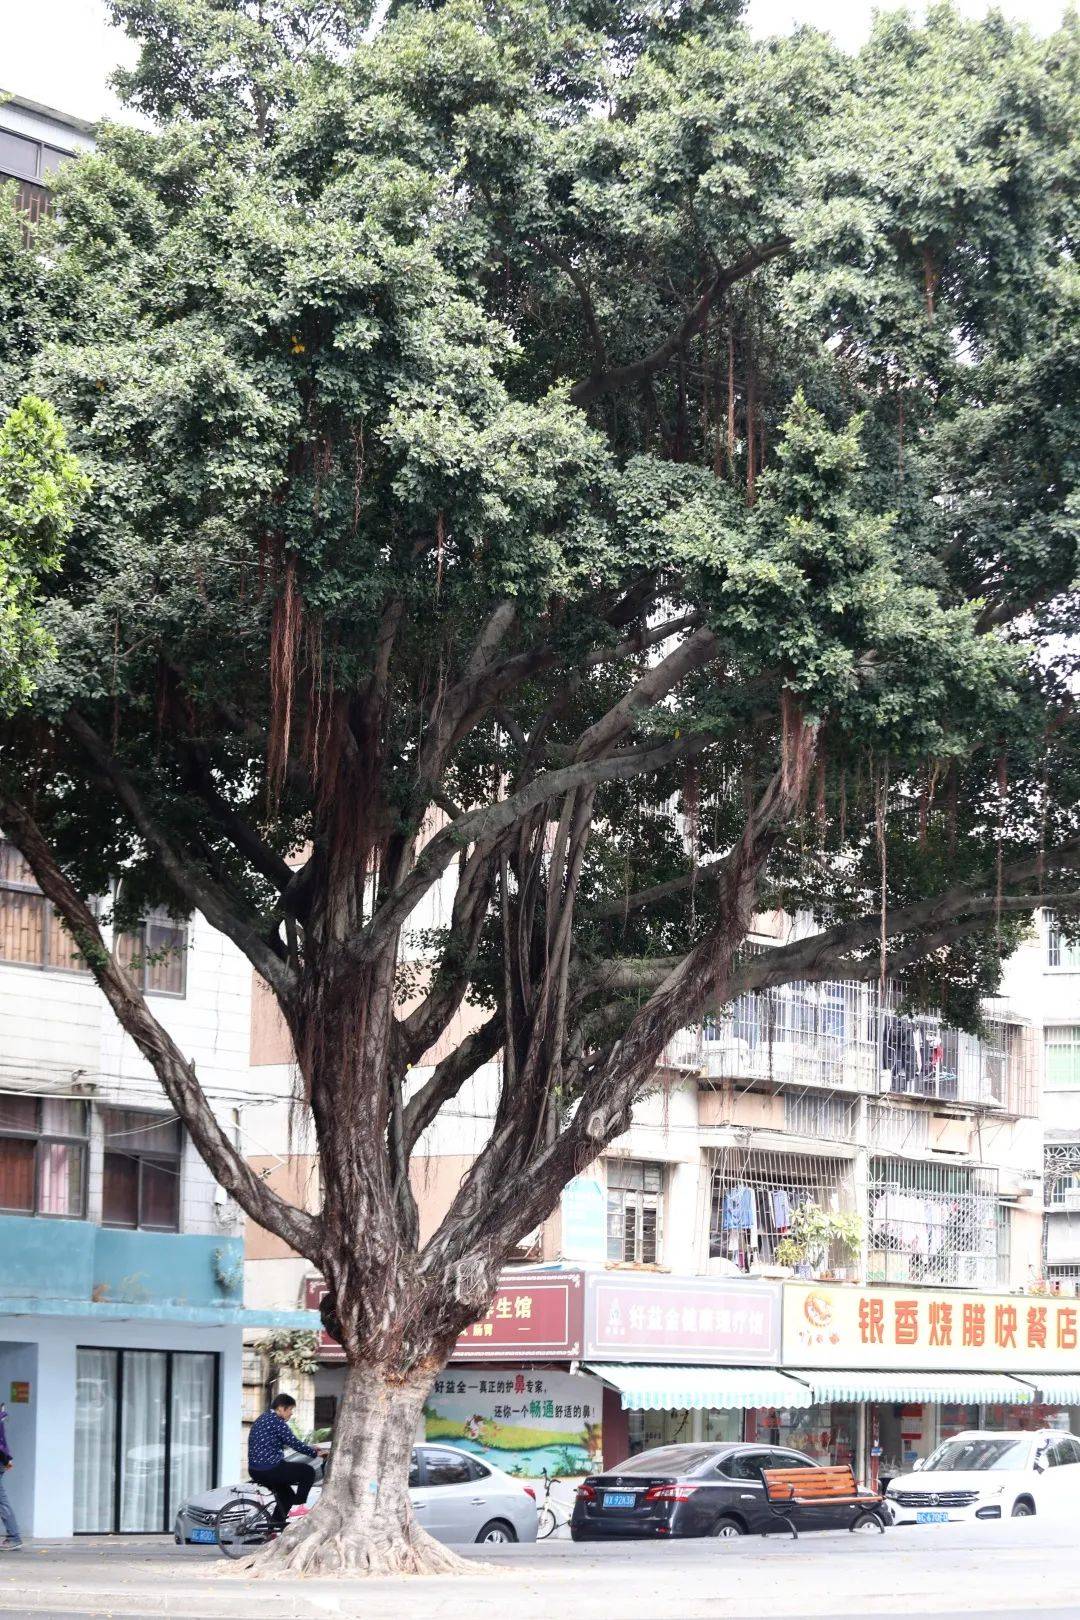 老珠海记忆: 榕树头下的街坊情